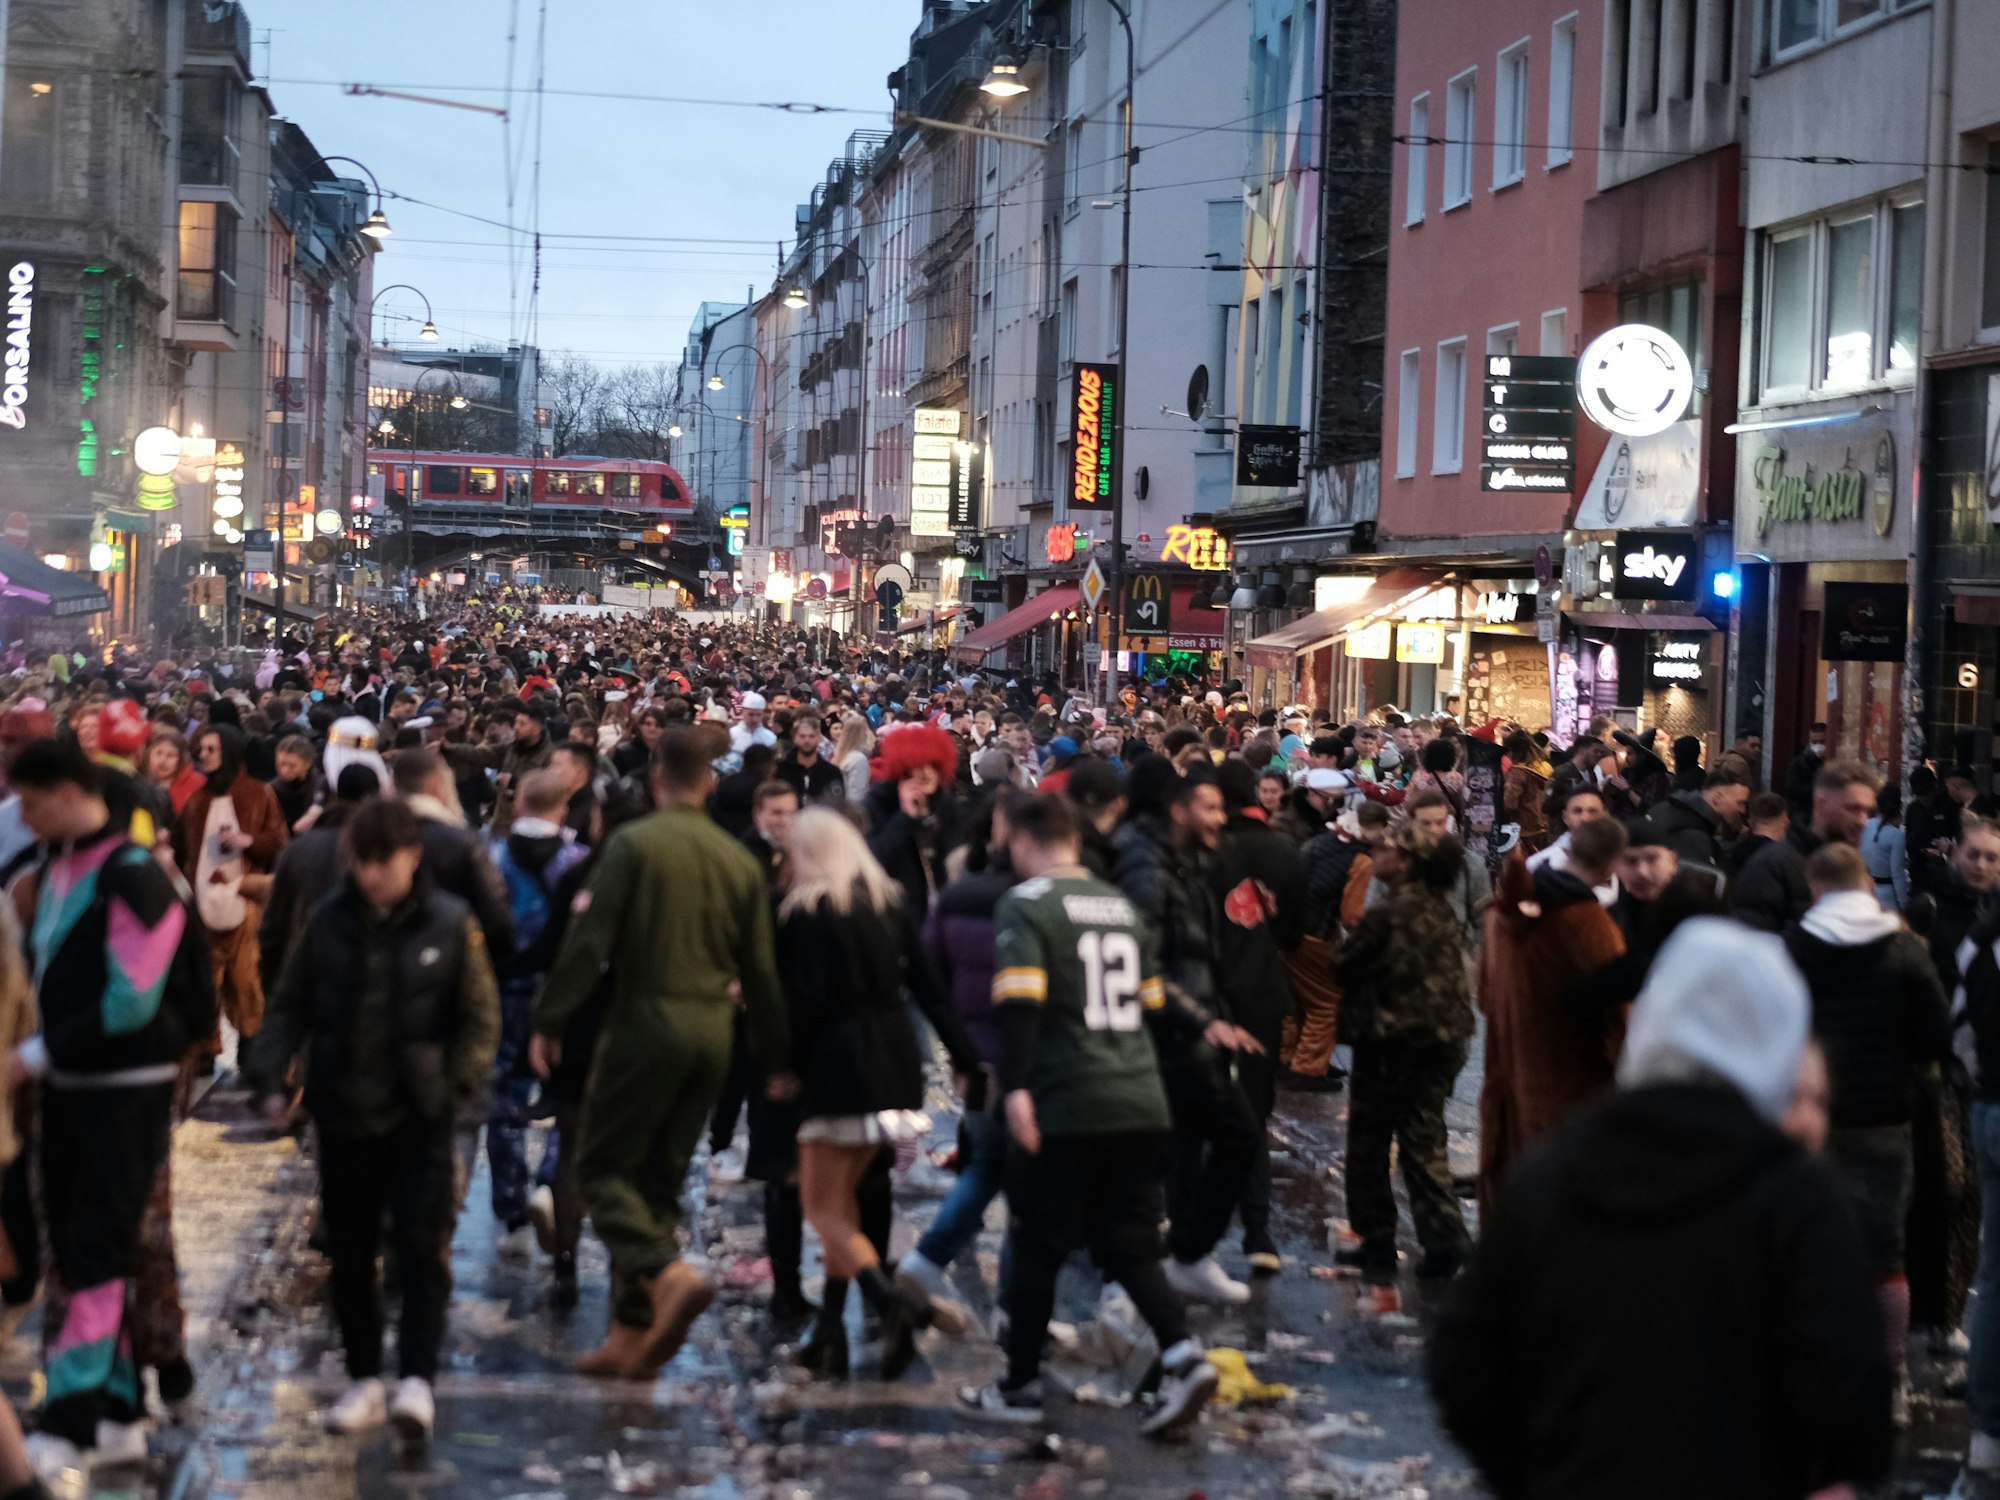 Feiernde Menge auf der Zülpicher Straße in Köln.